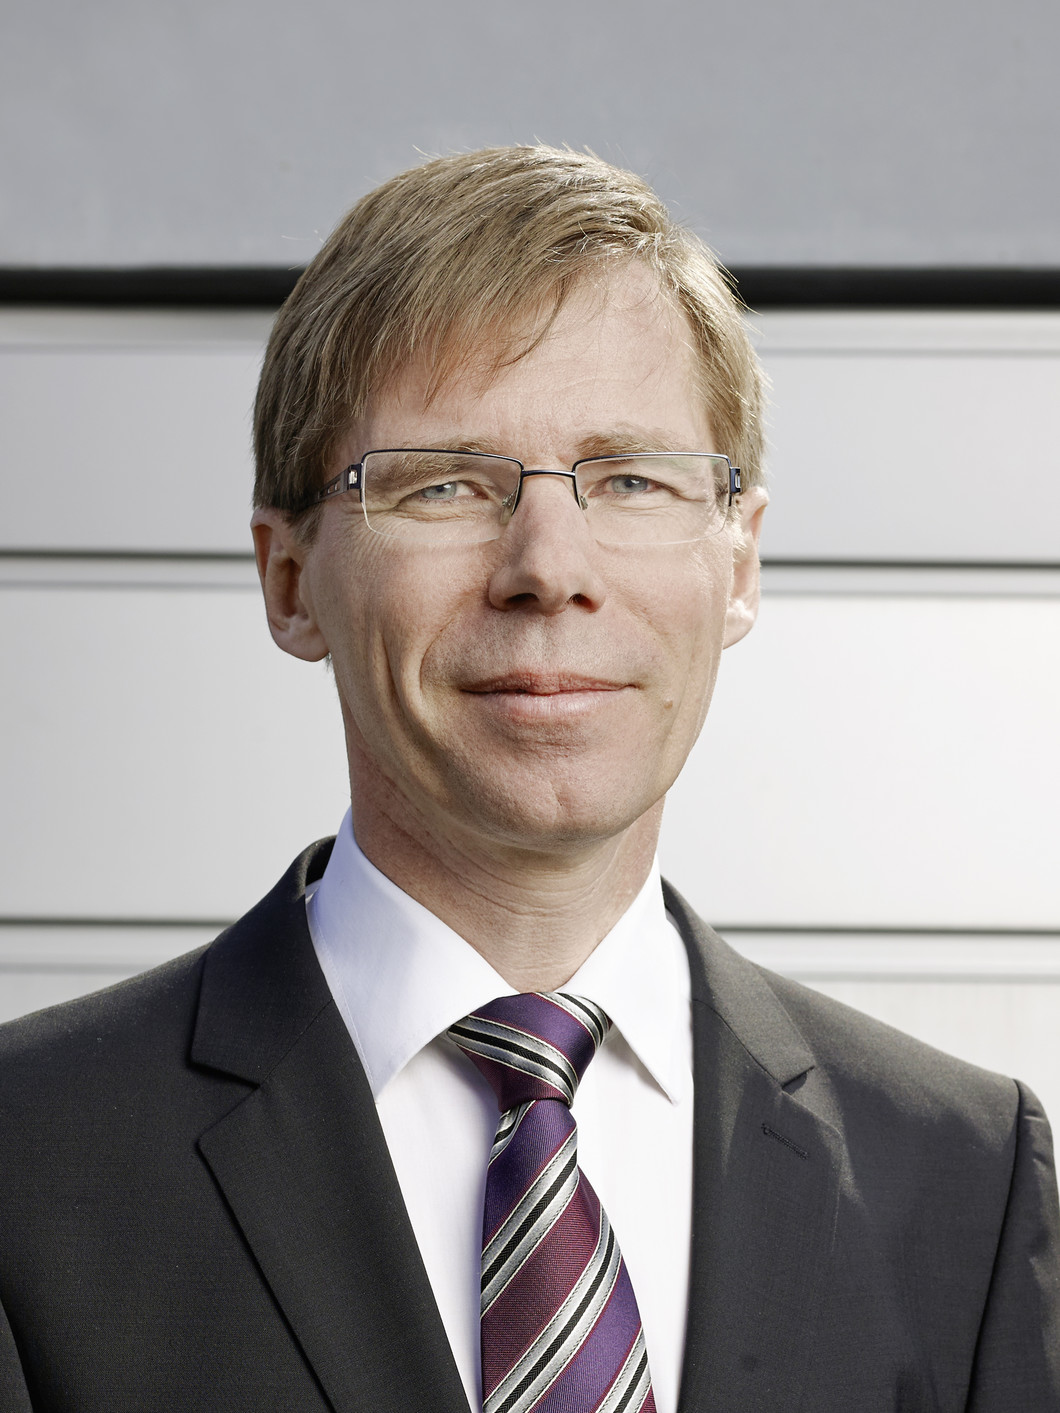 Joël Mesot ist seit 2008 Direktor des Paul Scherrer Instituts in Villigen/Würenlingen AG. Das PSI gehört zum ETH-Bereich, ebenso wie die Forschungseinrichtungen Eawag, Empa und WSL sowie die beiden Eidgenössischen Hochschulen in Zürich und Lausanne, an denen Mesot eine Doppelprofessur innehat.